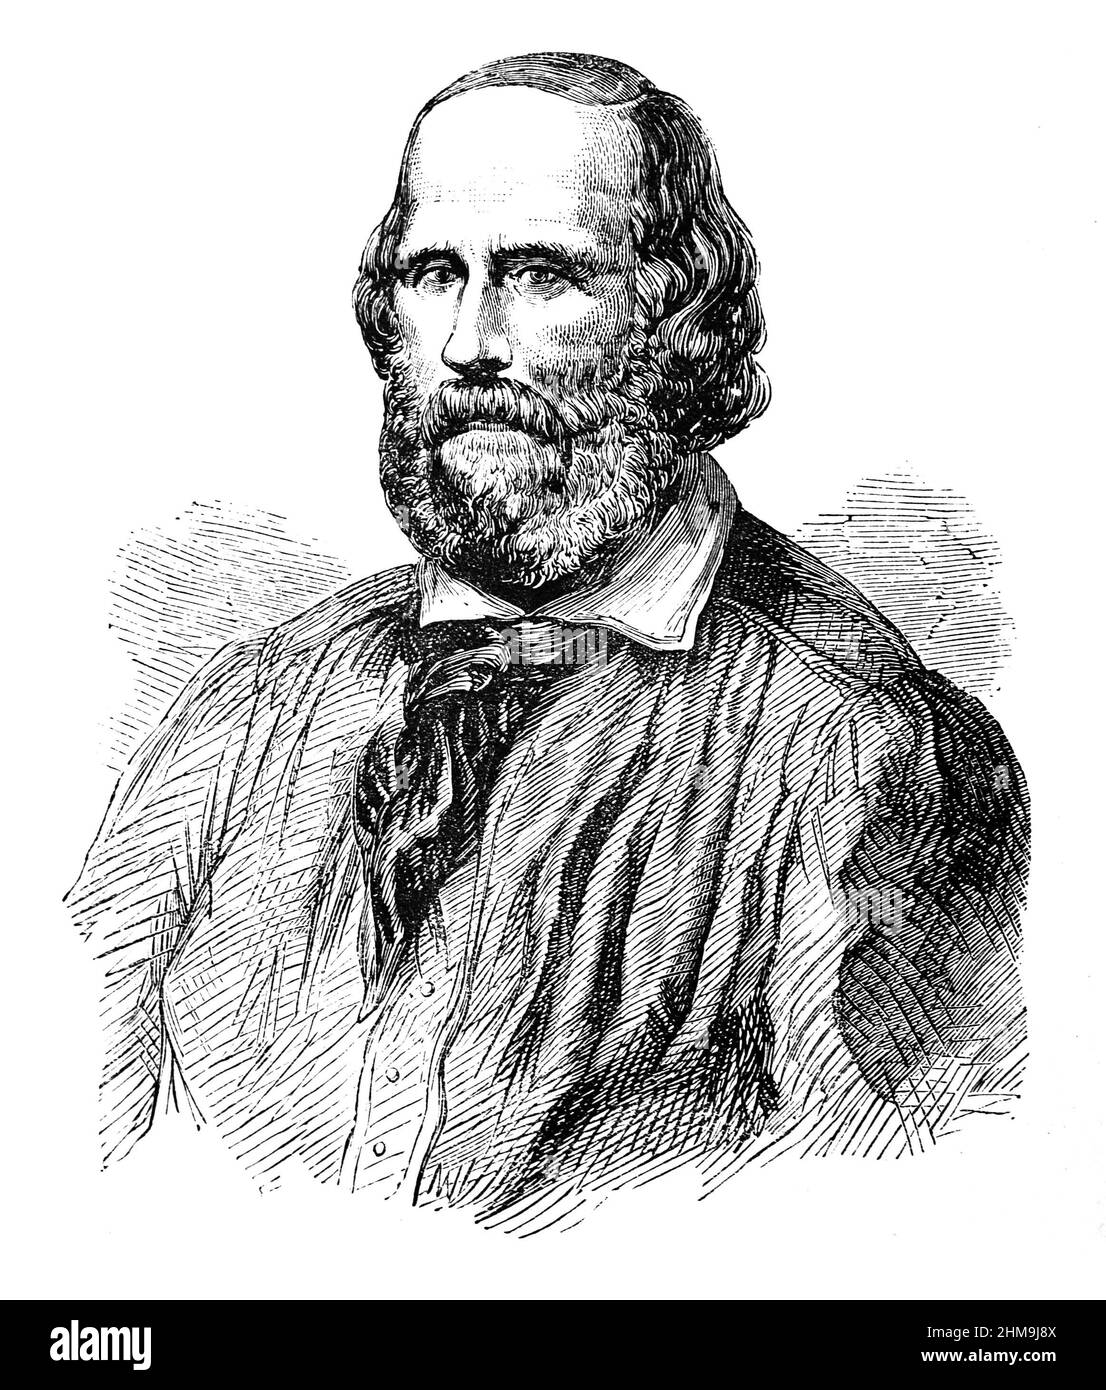 Illustration noir et blanc ; Portrait de Giuseppe Garibaldi, général italien, patriote, révolutionnaire et républicain Banque D'Images